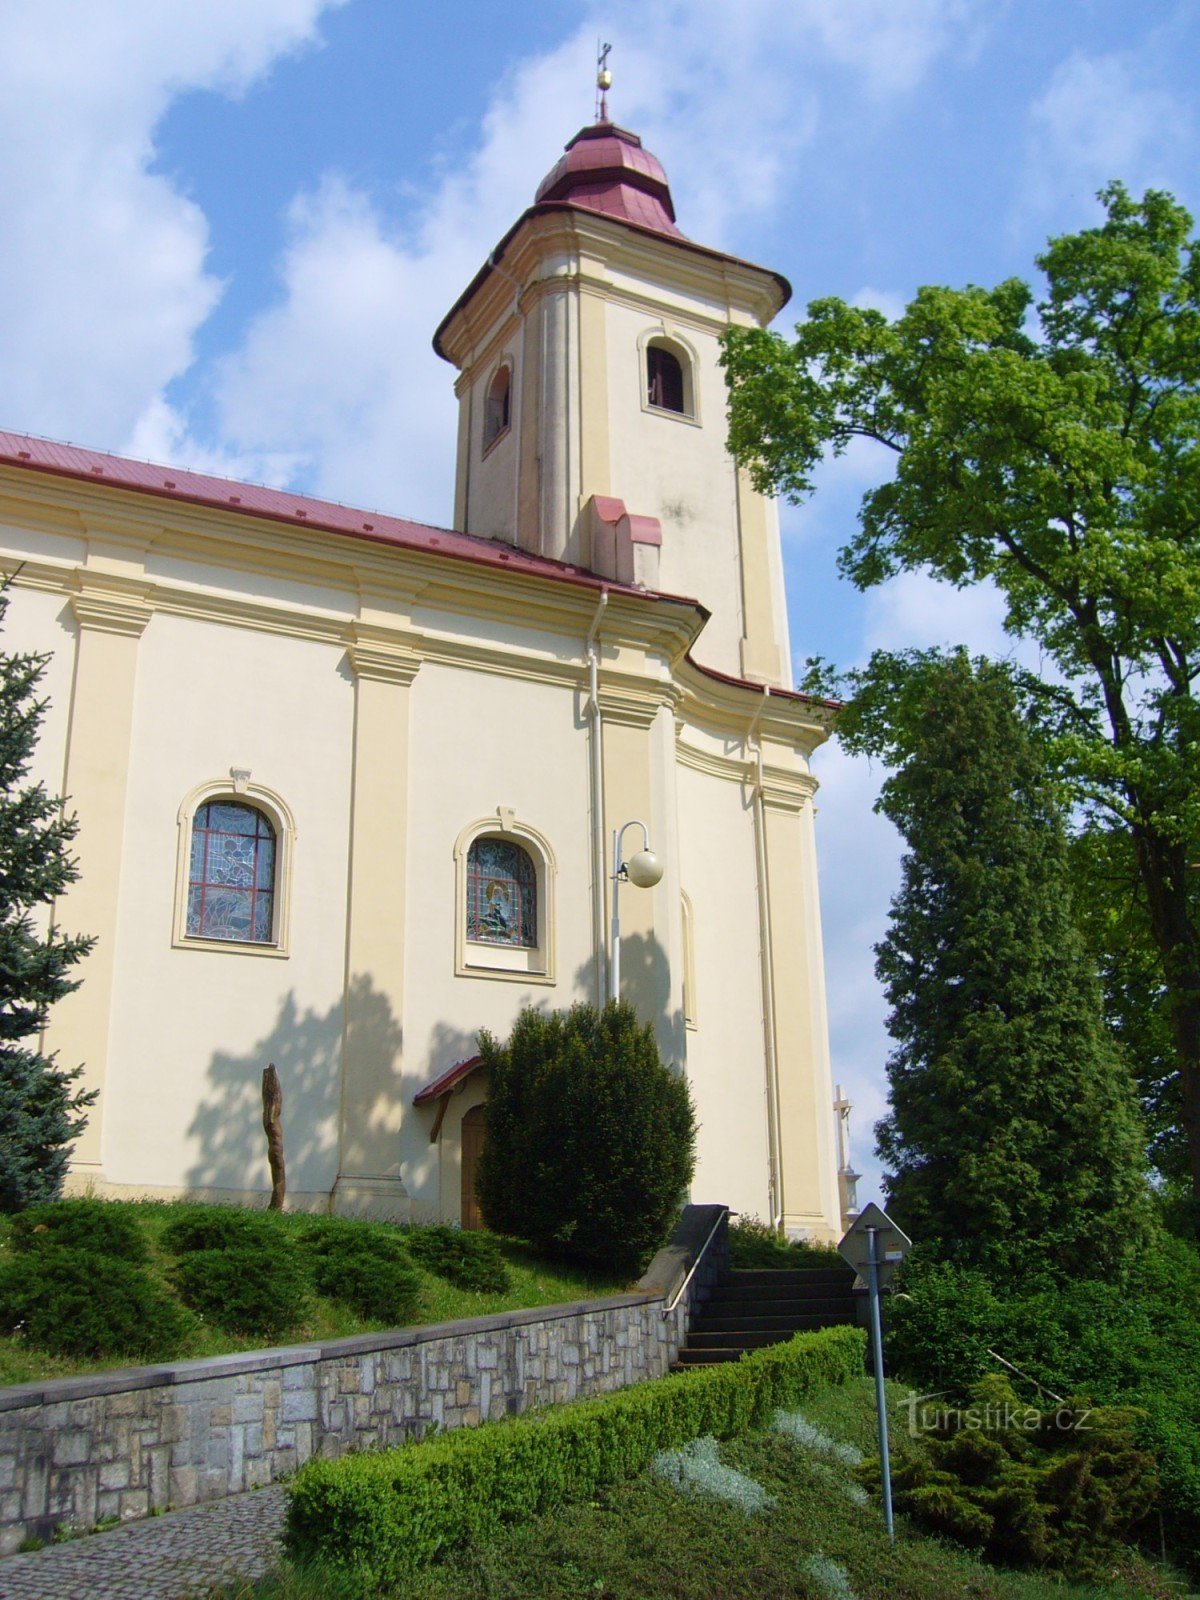 Plesná - church of St. Jakub